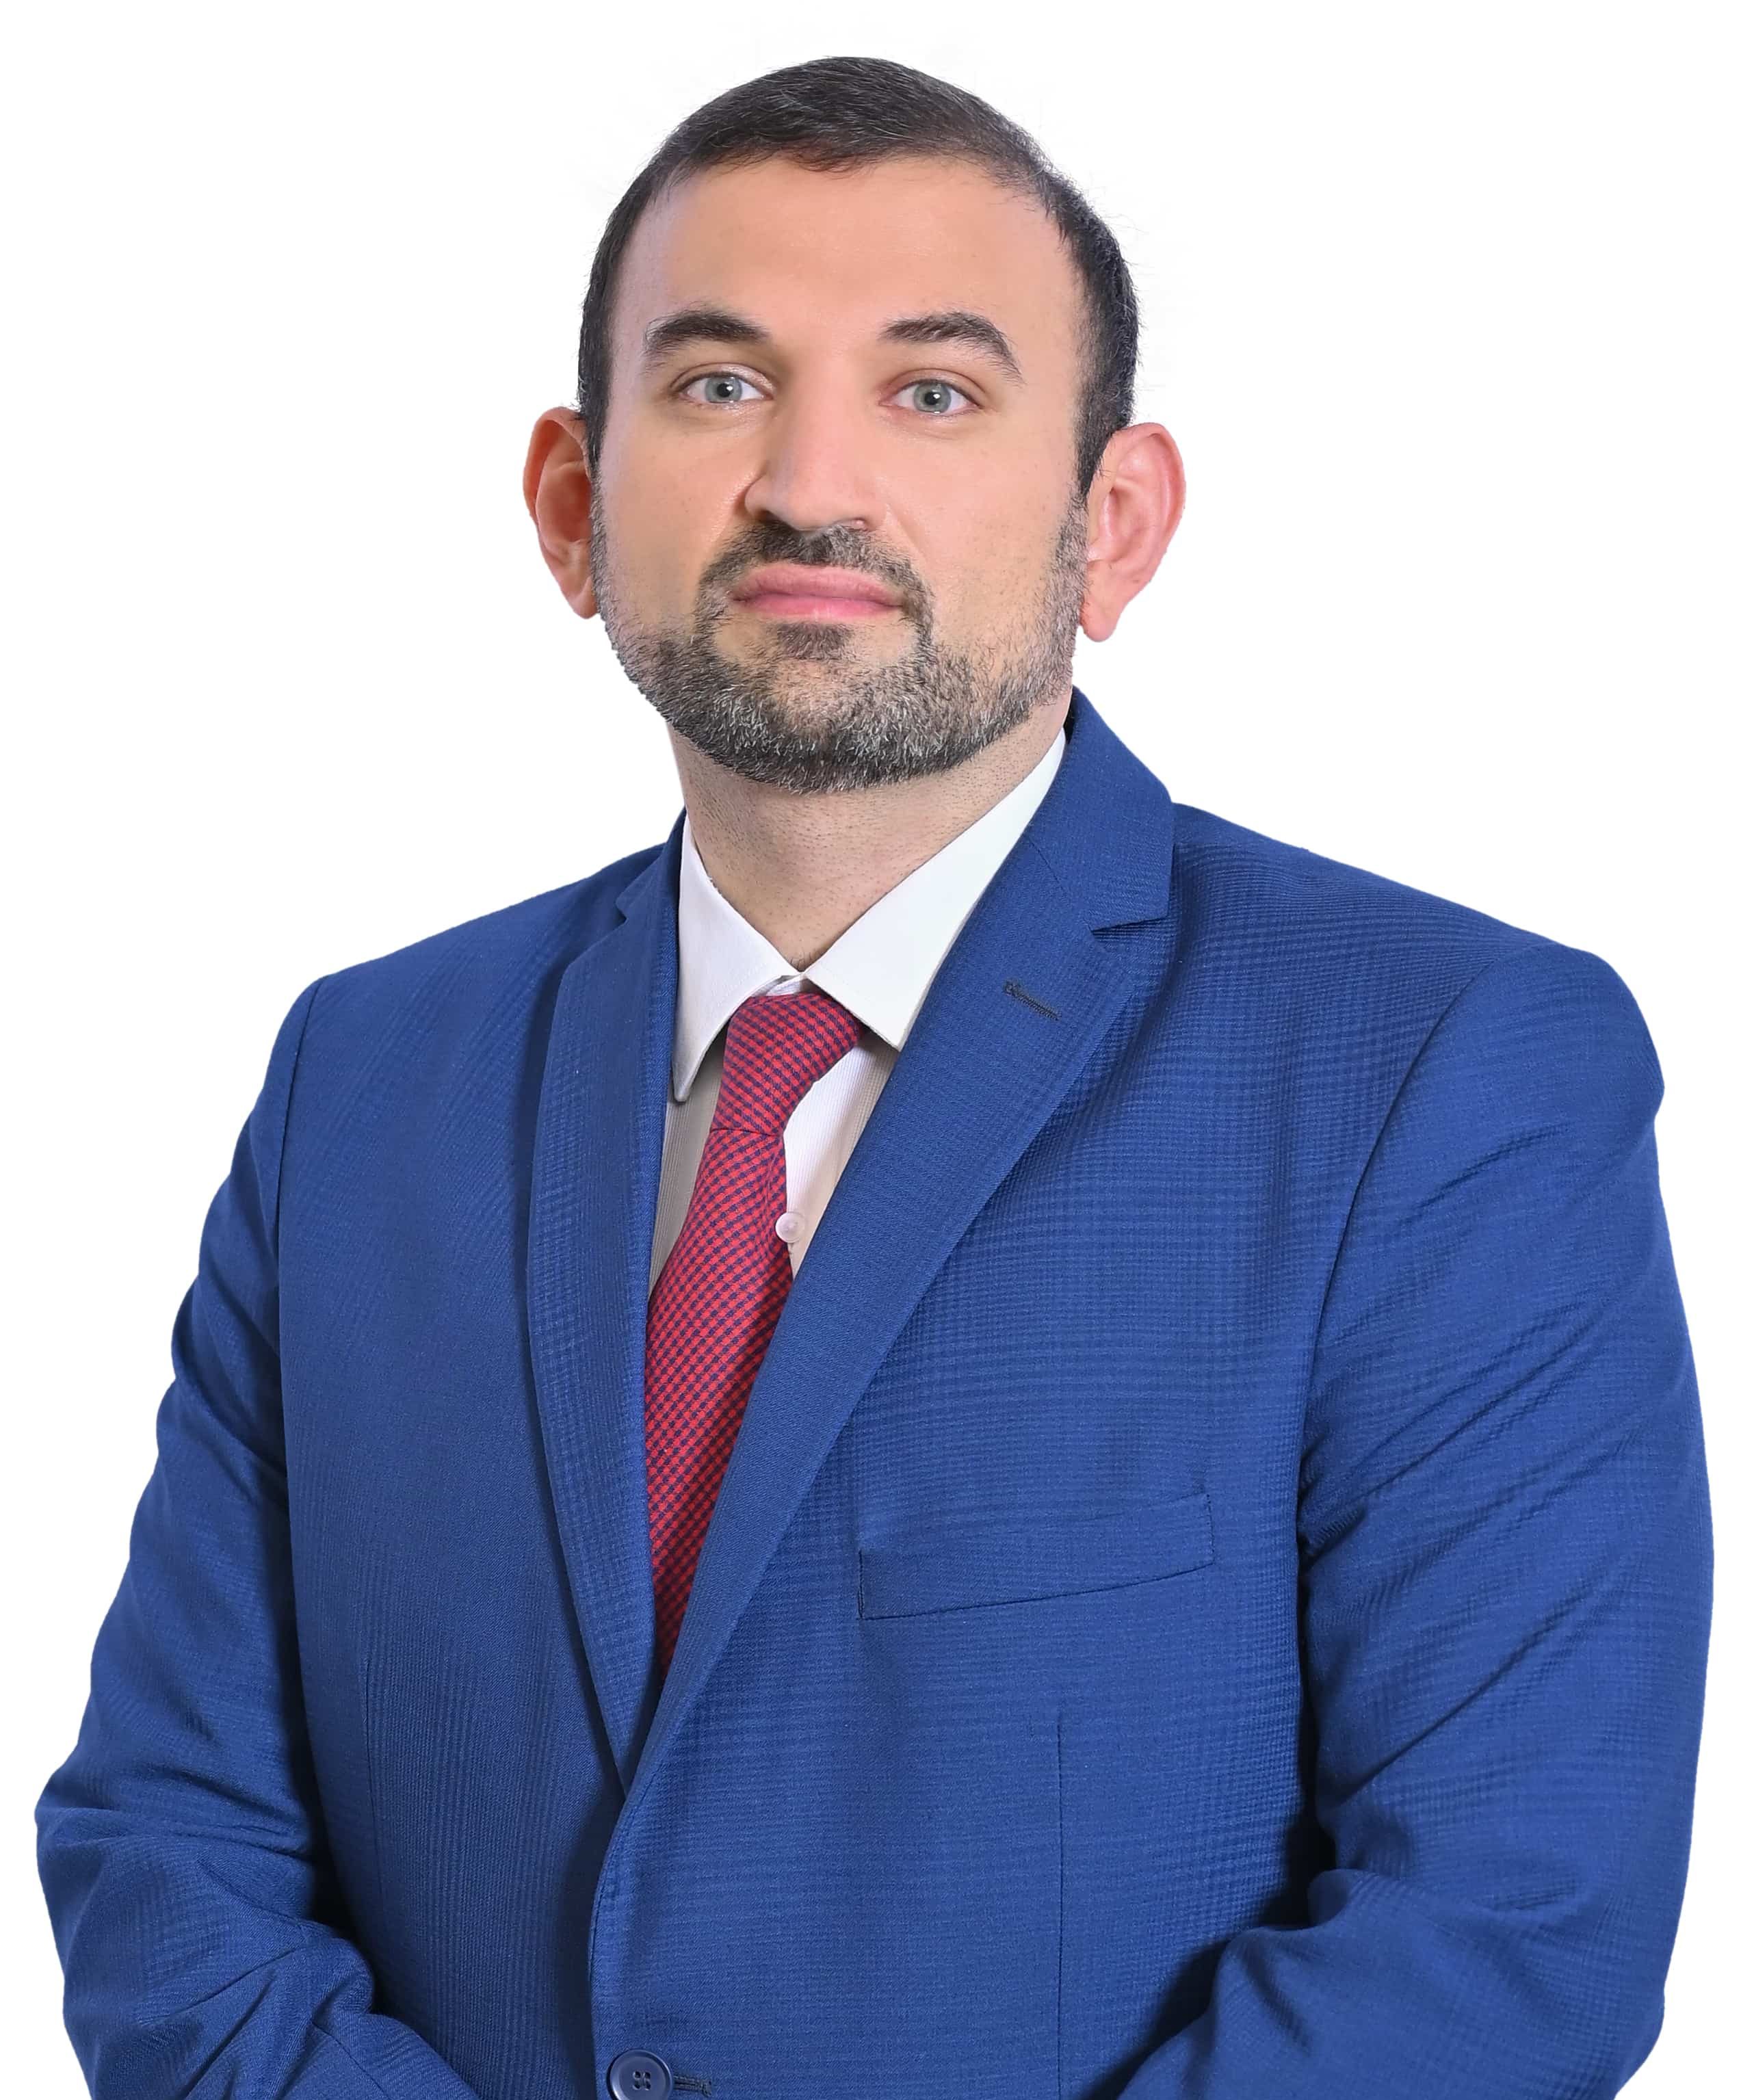 Dr. Moussab Damlaj